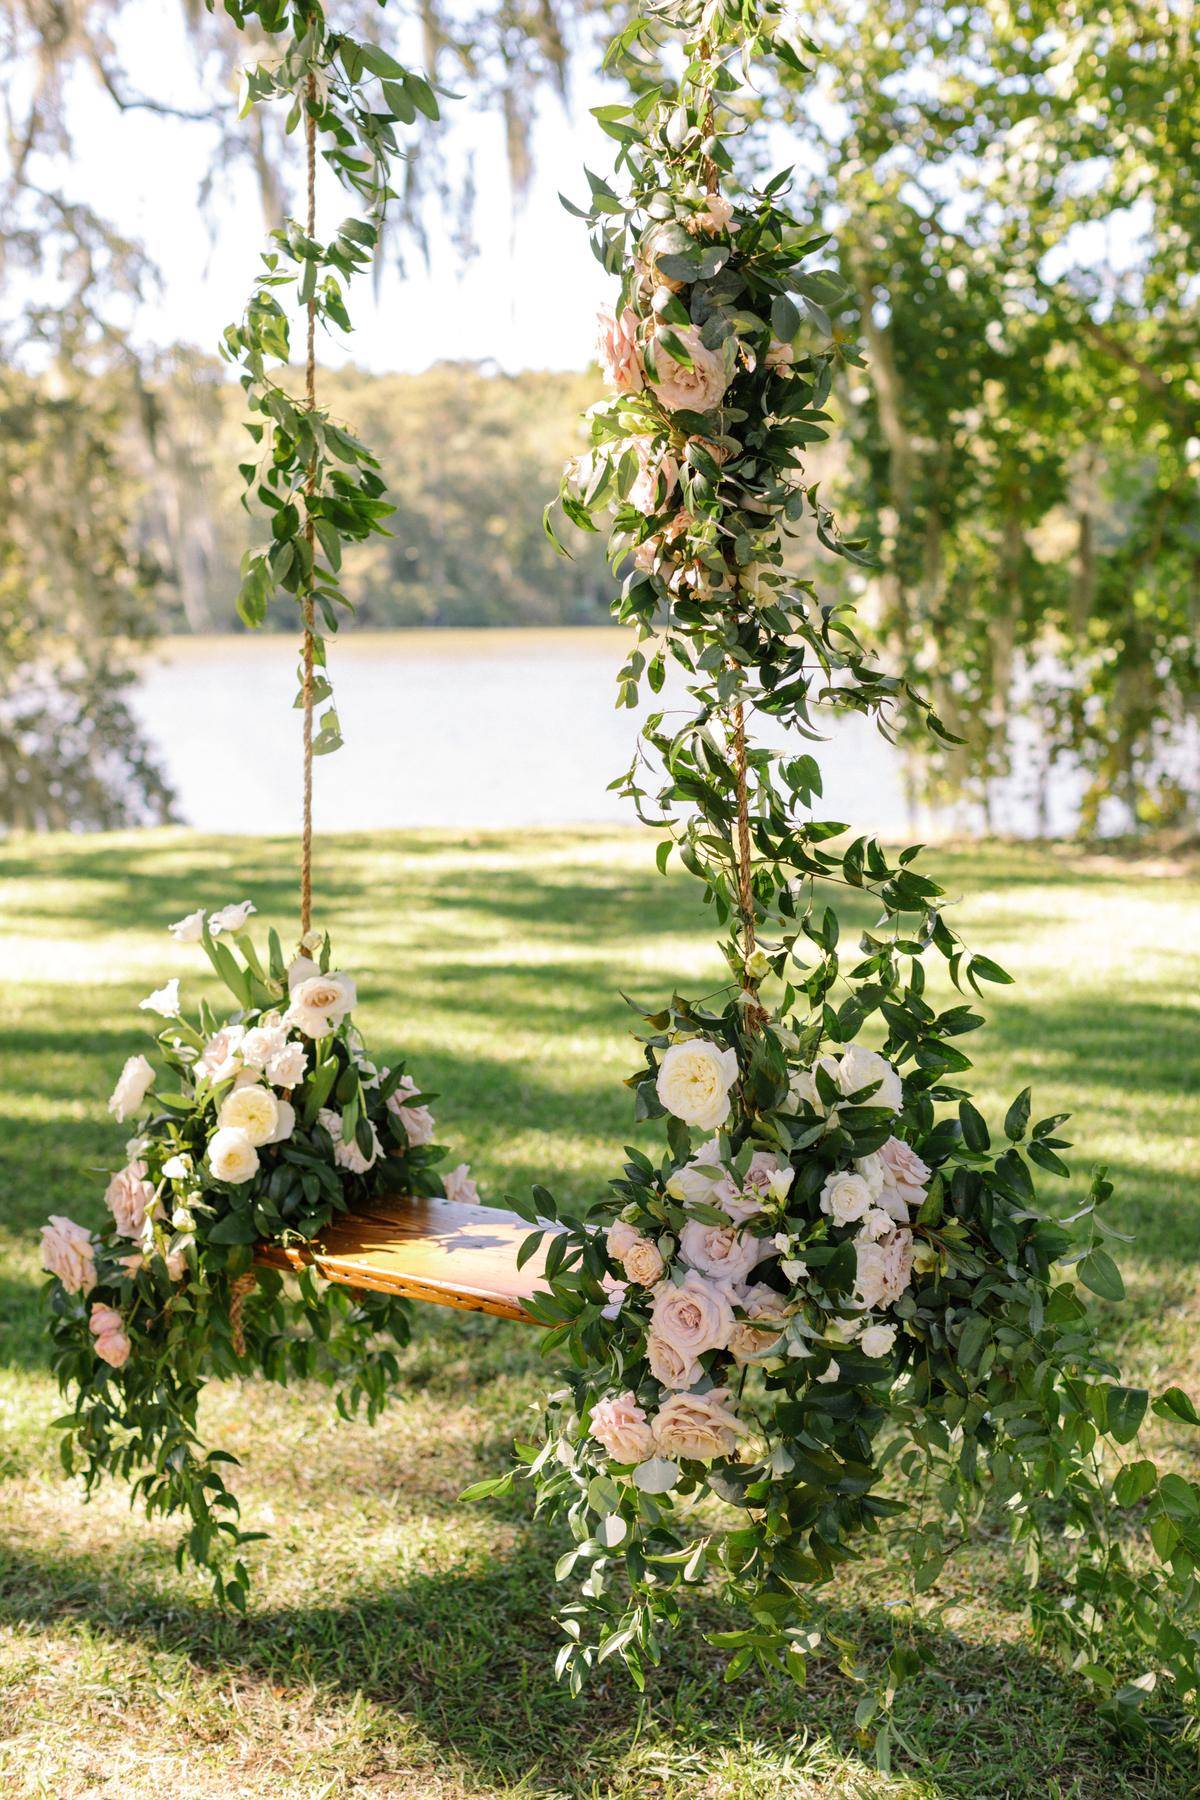 Decoración para bodas al aire libre: columpio decorado con flores, Pinterest.